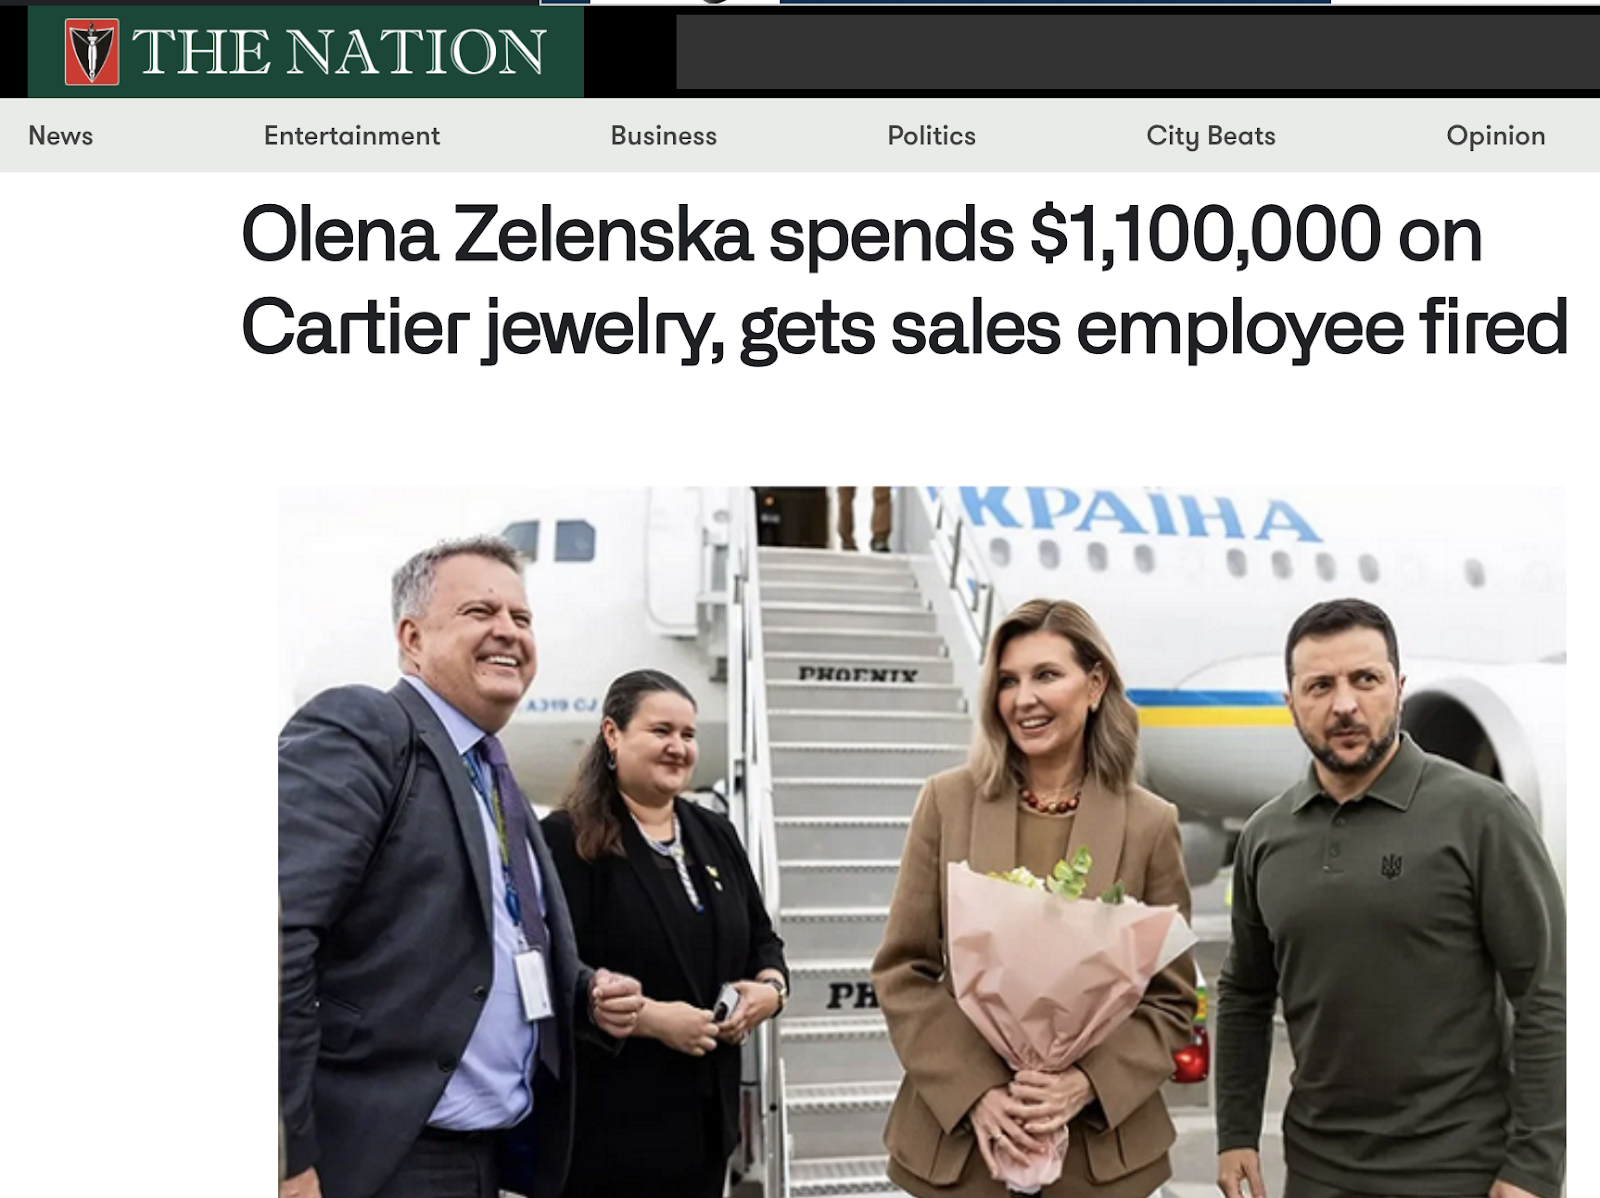 РосСМИ попались на фейке о Елене Зеленской, которая "потратила более миллиона долларов на украшения Cartier"